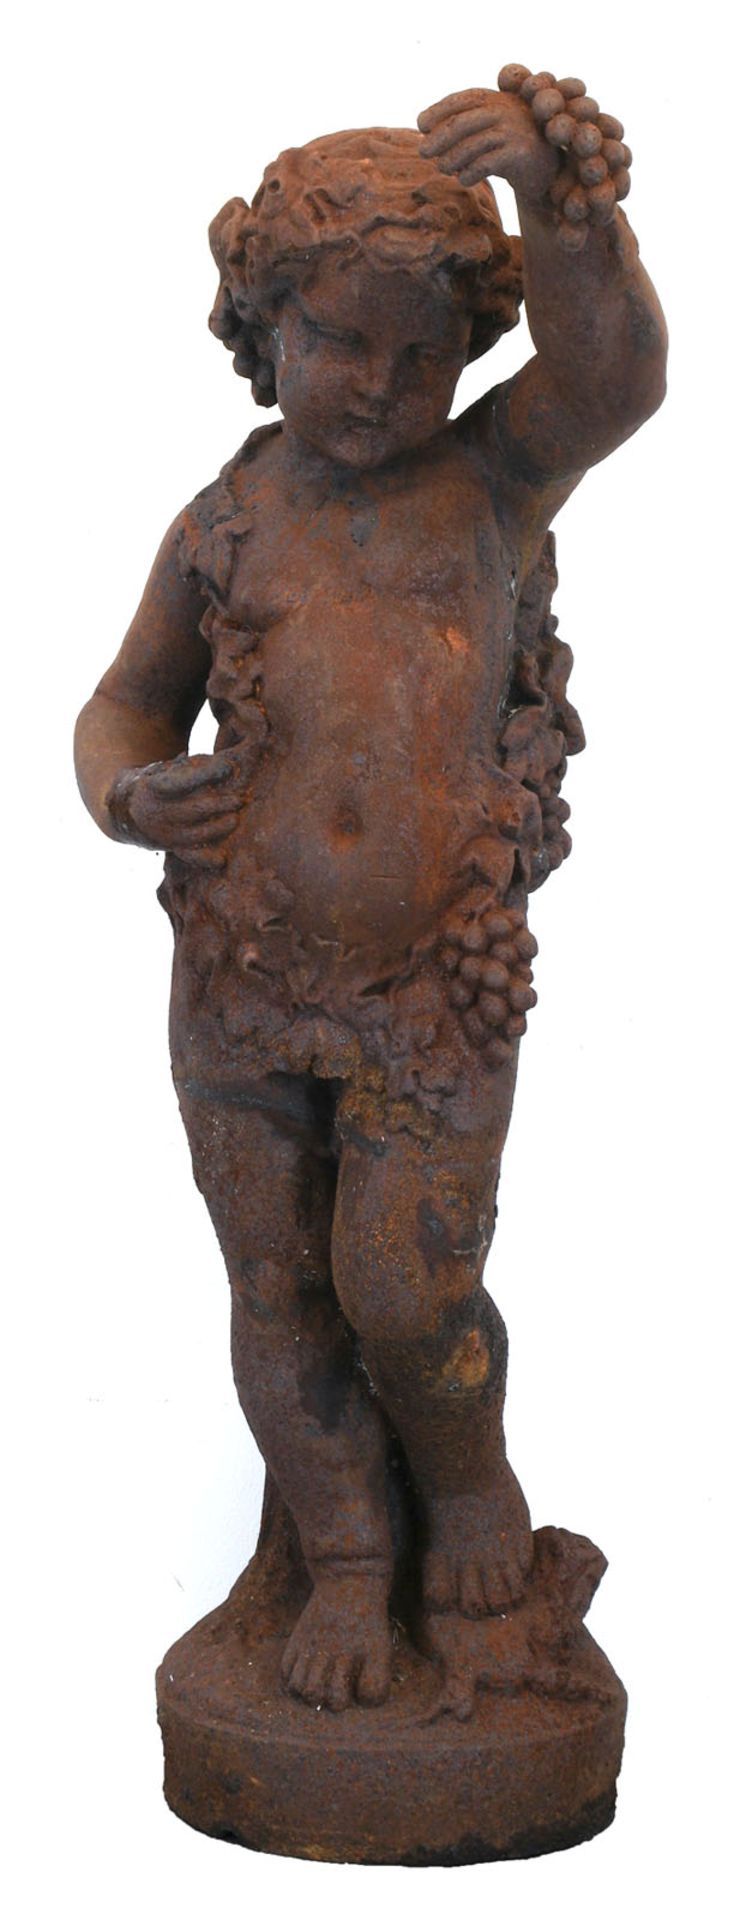 Große Gartenfigur "Bacchus", 19. Jh., Eisenguß, korrodiert, H. 137 cm, Dm. 50 cm